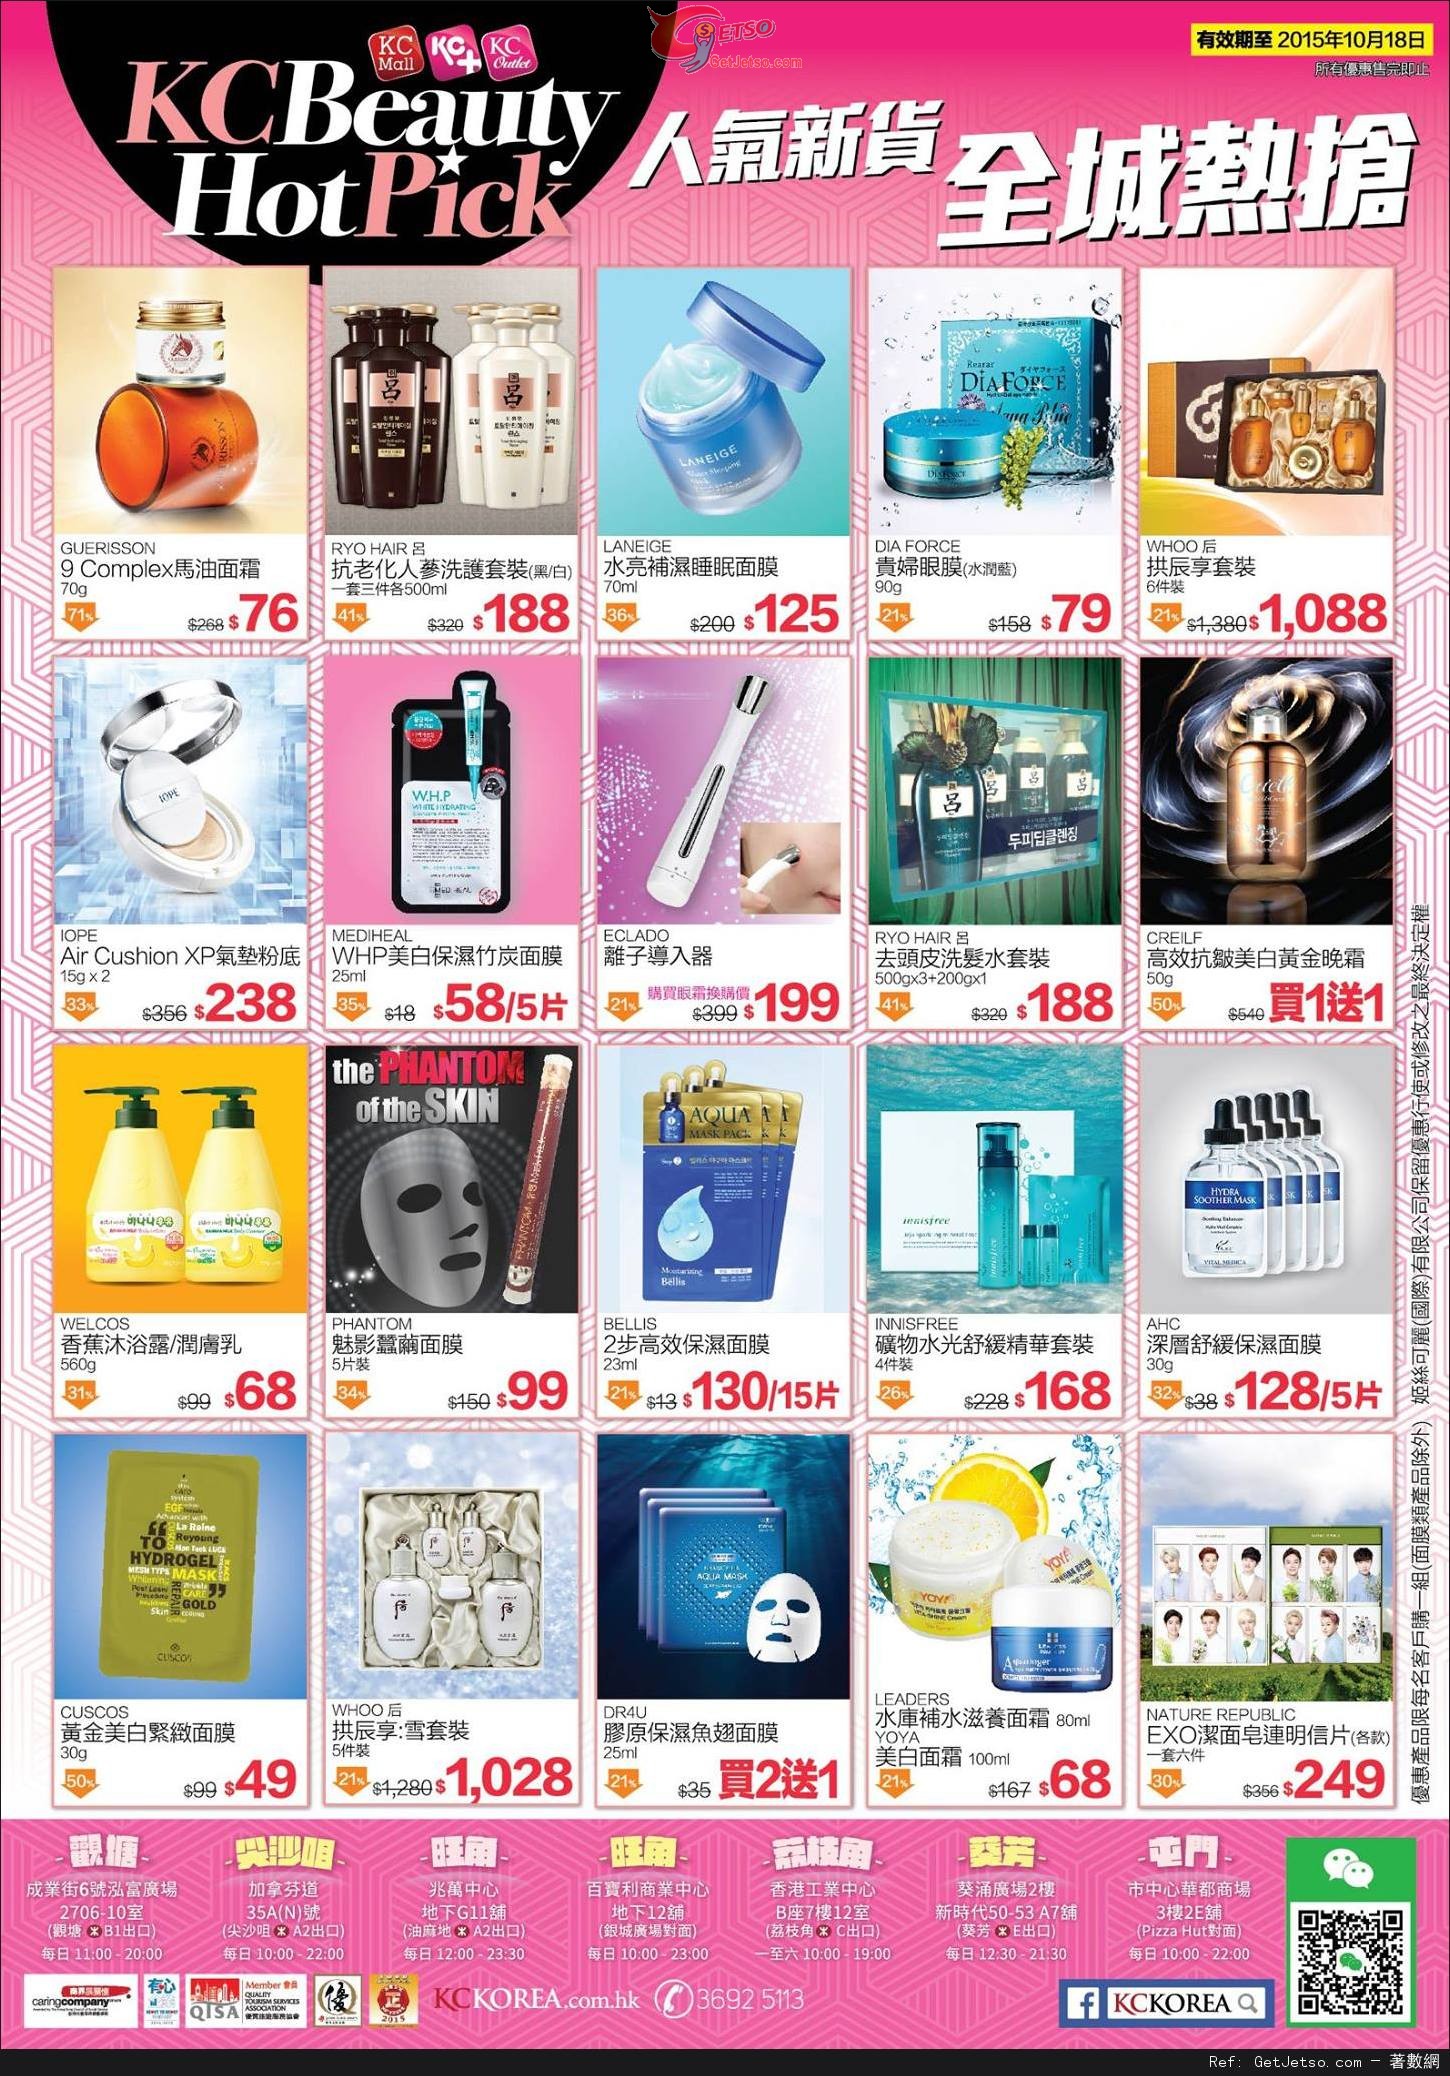 KC Korea 韓國用品專賣店購物優惠(至15年10月18日)圖片1